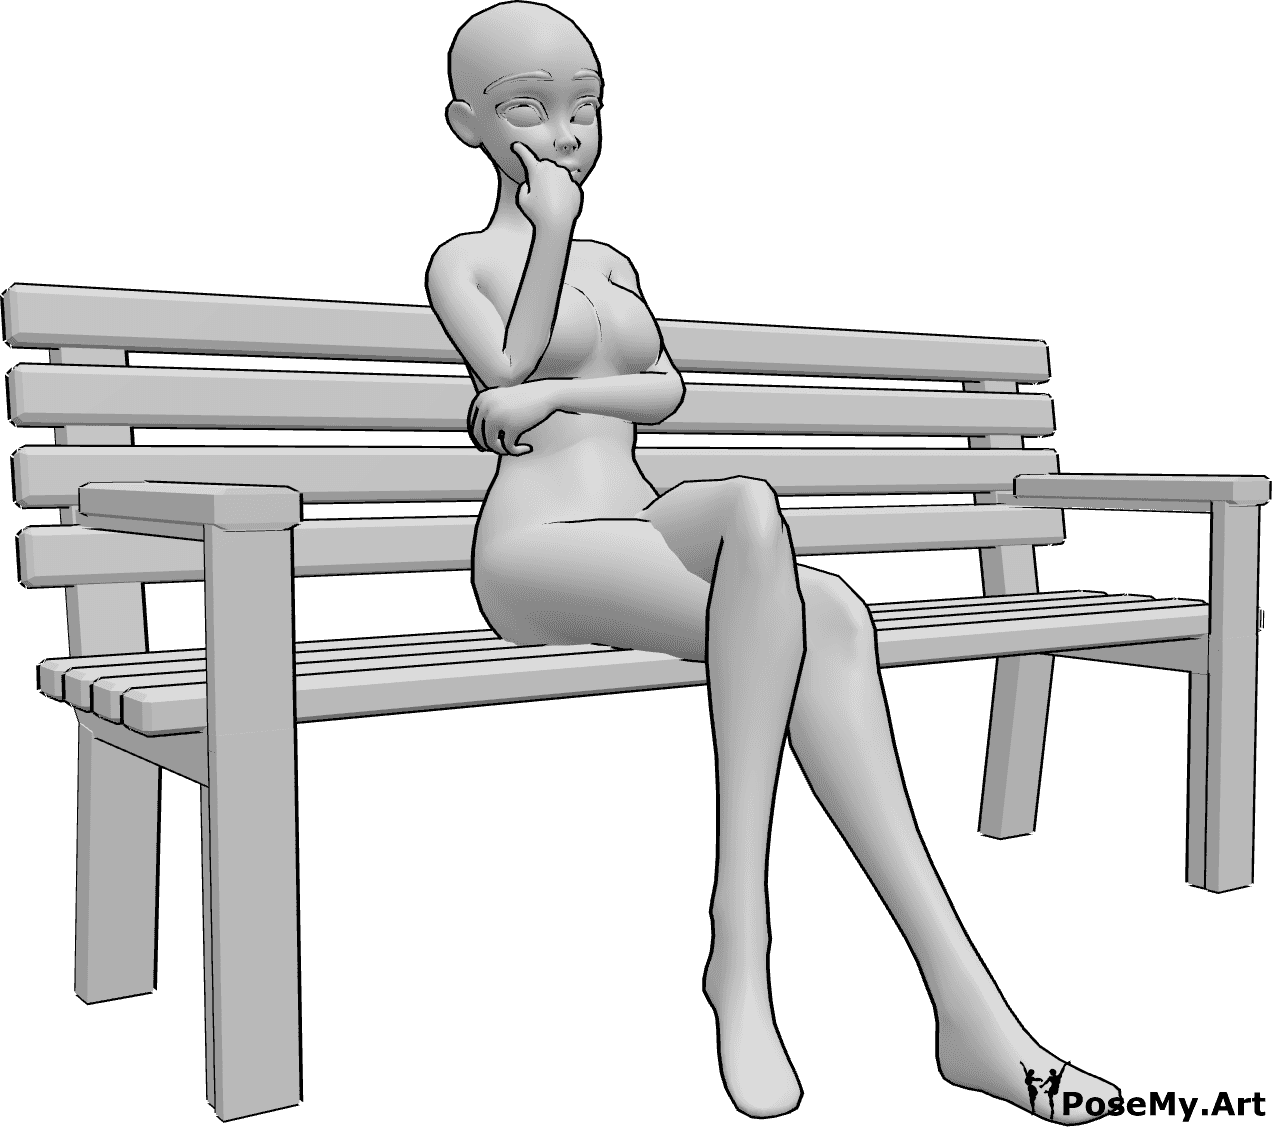 Referencia de poses- Anime sentado en un banco - La mujer anime está sentada sola en el banco, tiene las piernas cruzadas y mira hacia delante, pensando